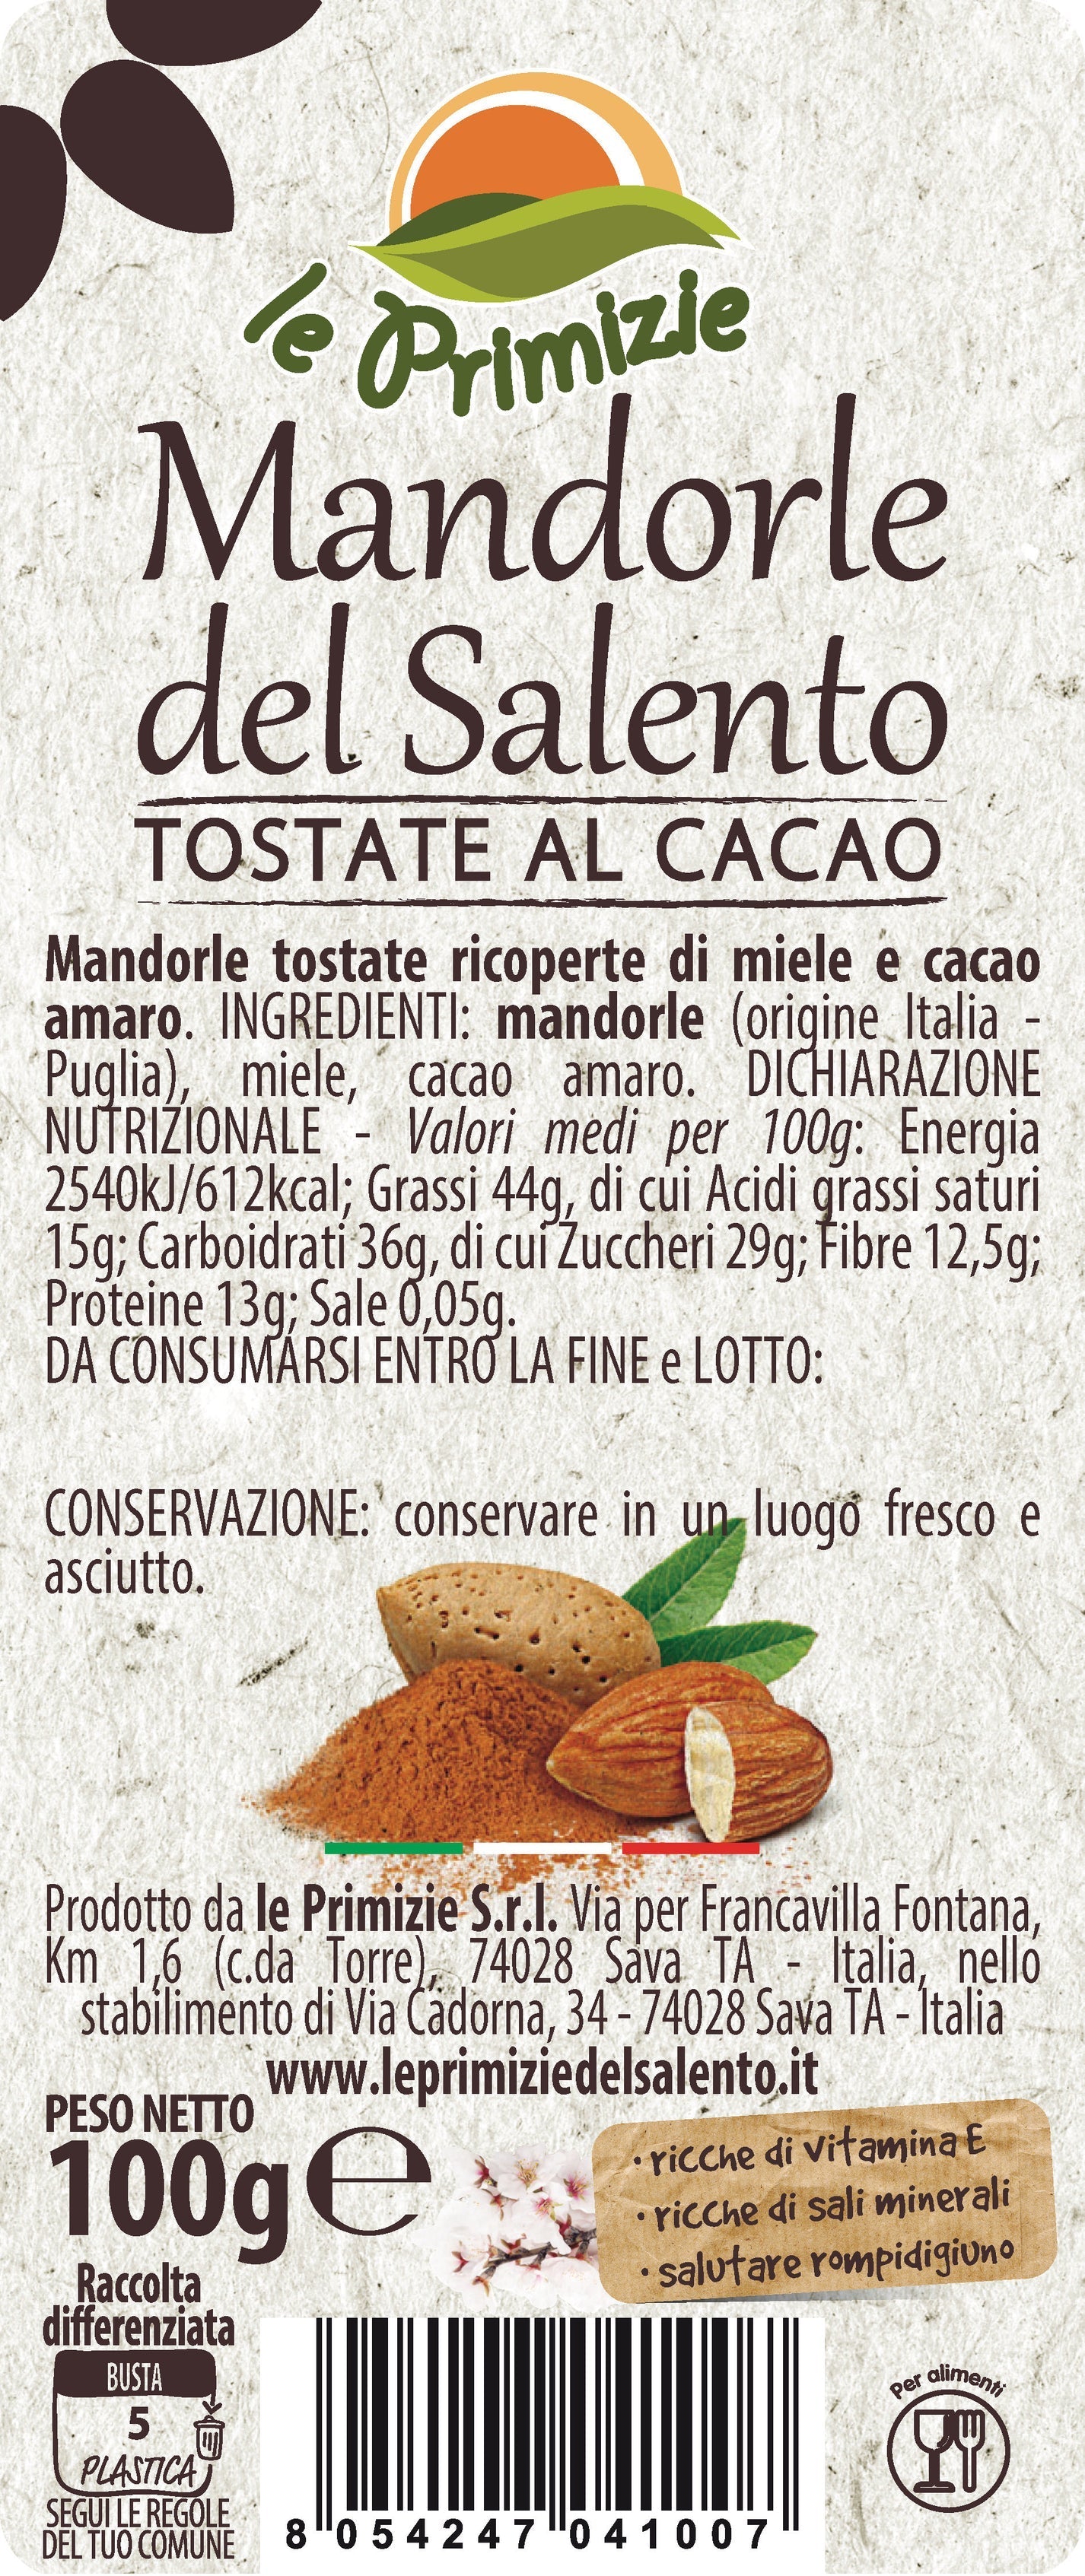 Shelled Almonds and Toast Pugliesi - Bag 35g (Copia) (Copia) (Copia)